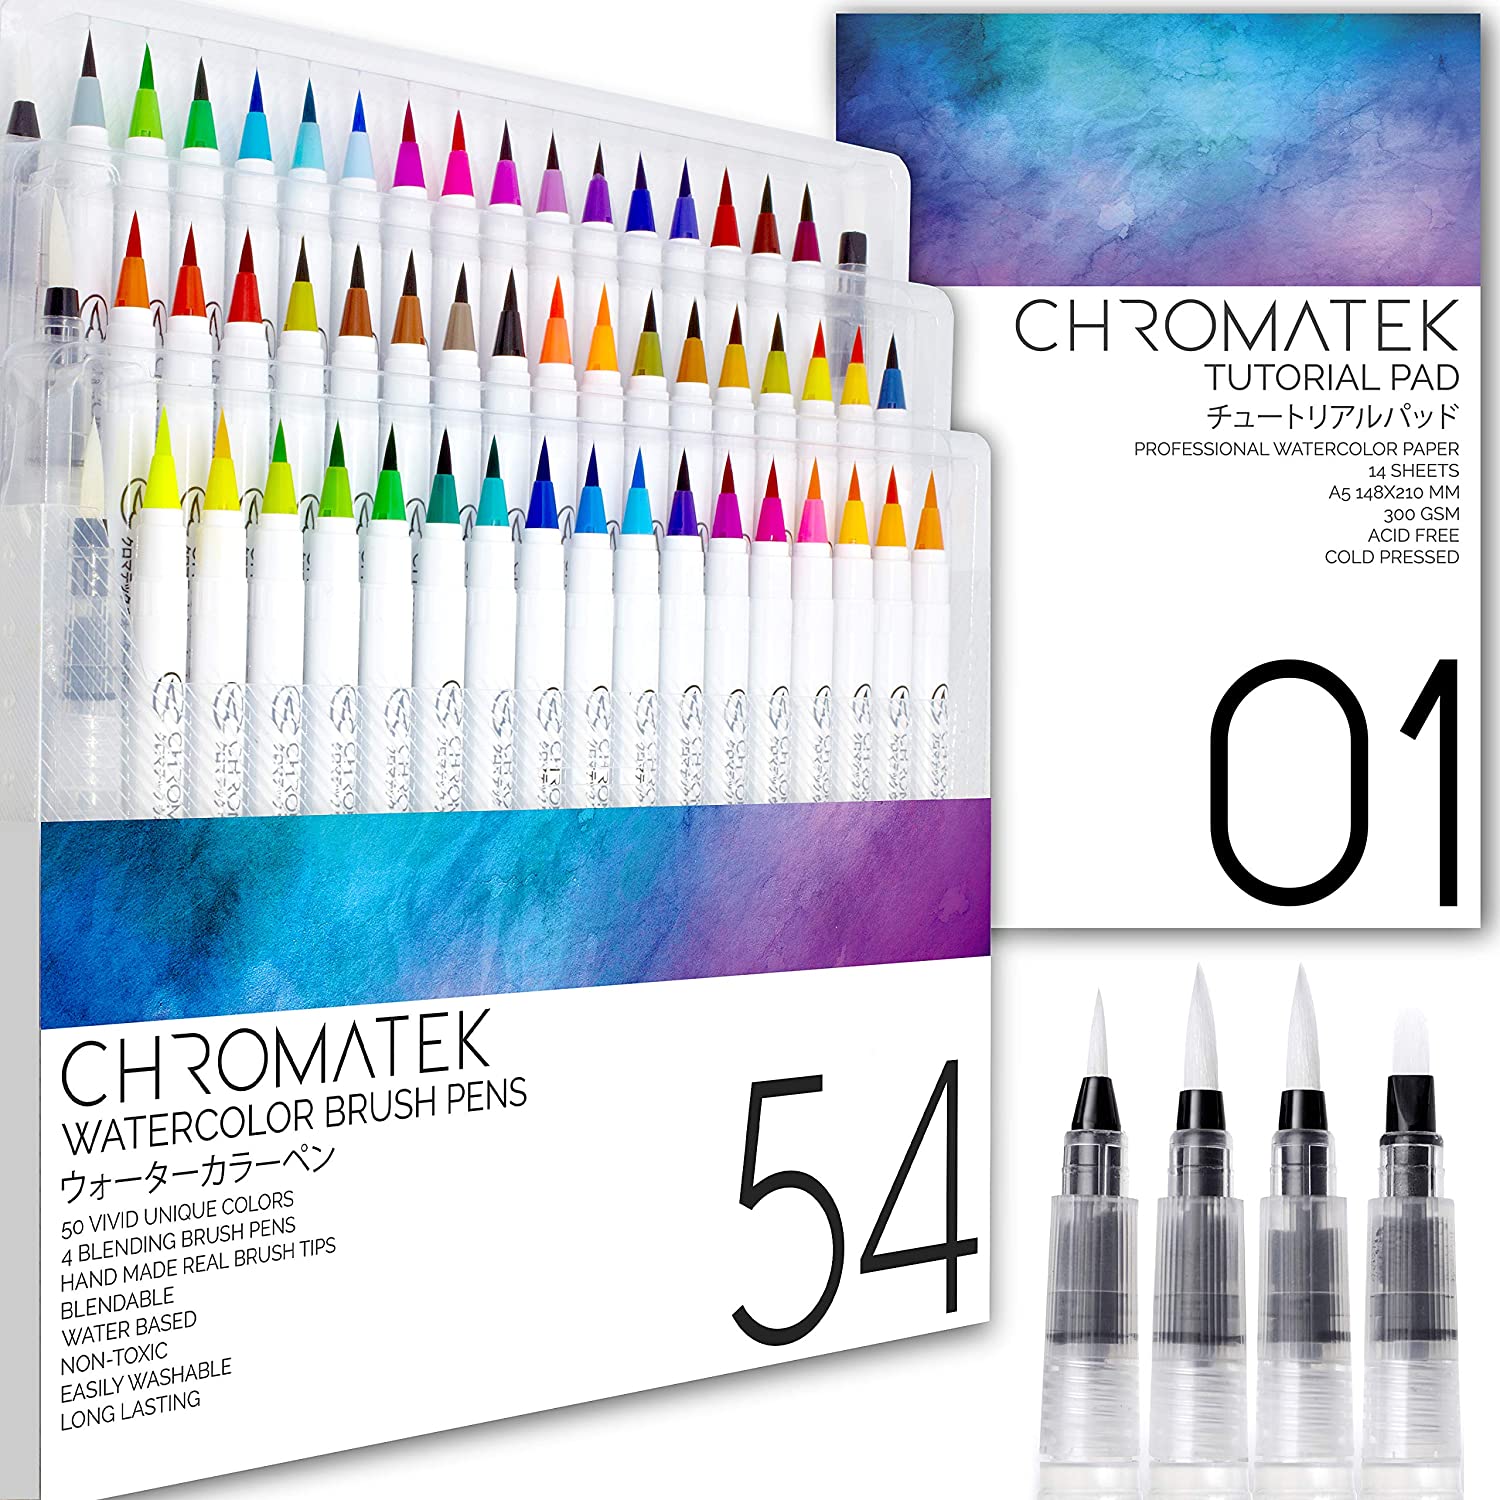 Chromatek Watercolor Brush Pens, 52 ct